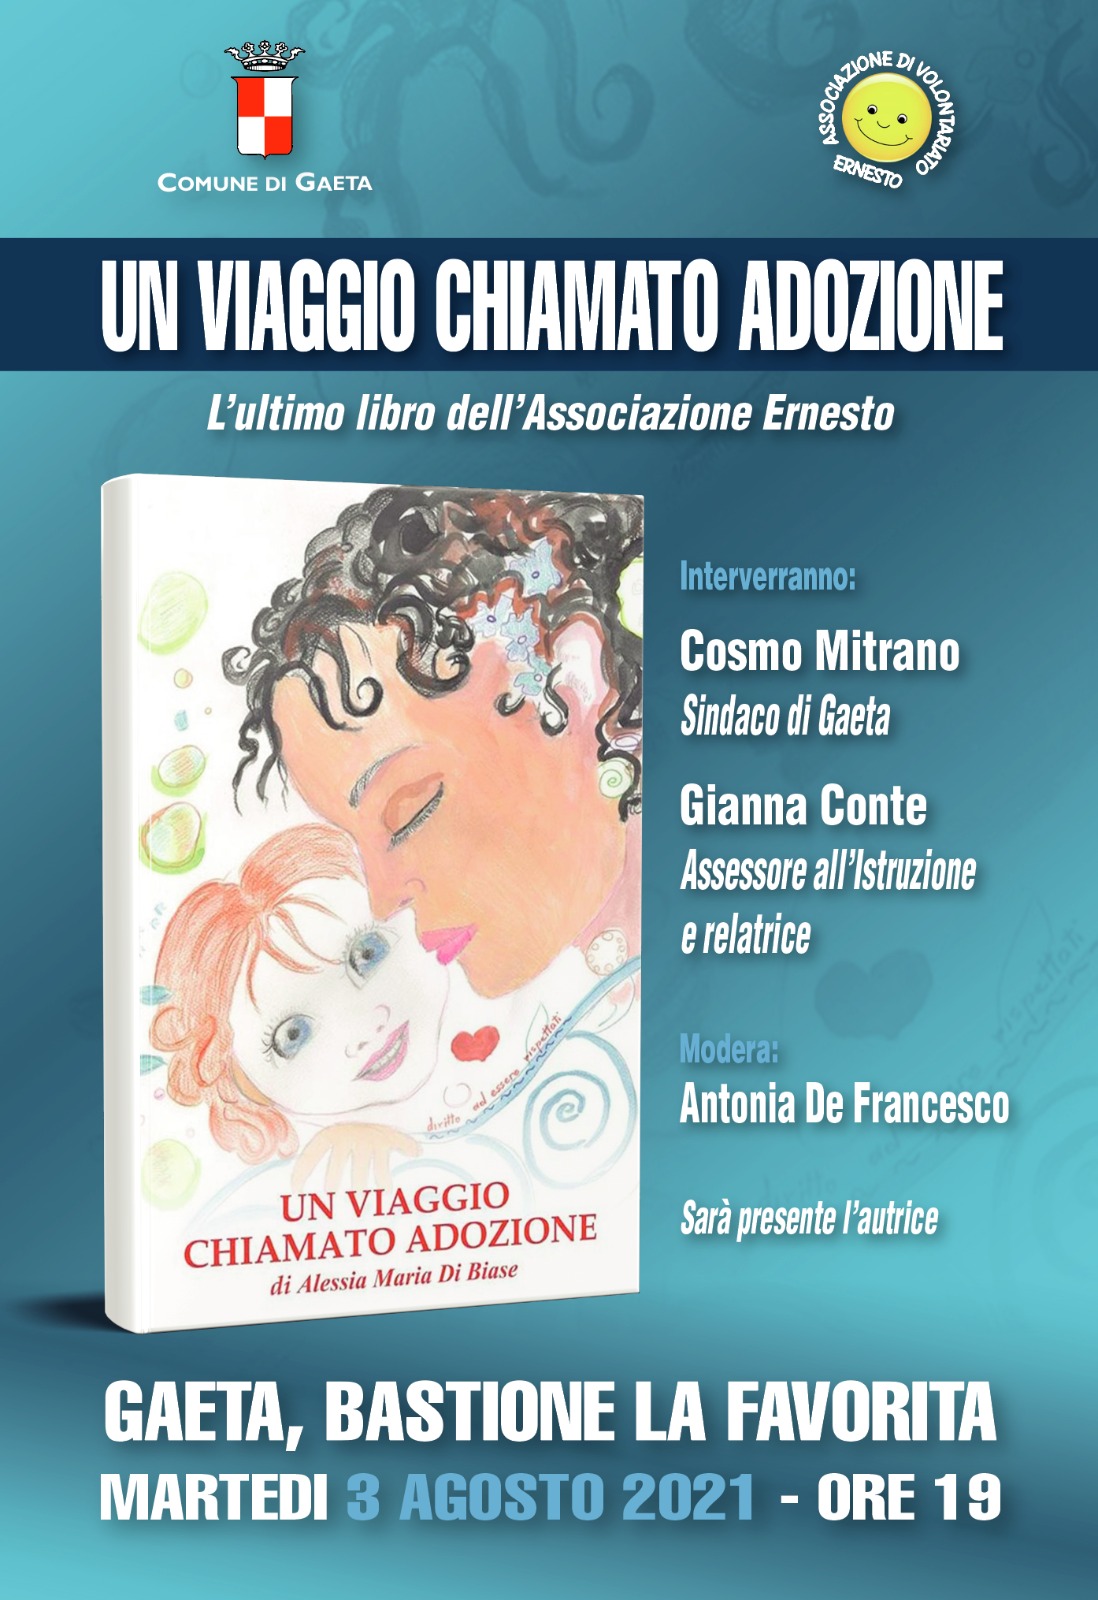 Un viaggio chiamato adozione, presentazione del libro di Alessia Maria Di Biase. 3 agosto bastione le "Favorita".